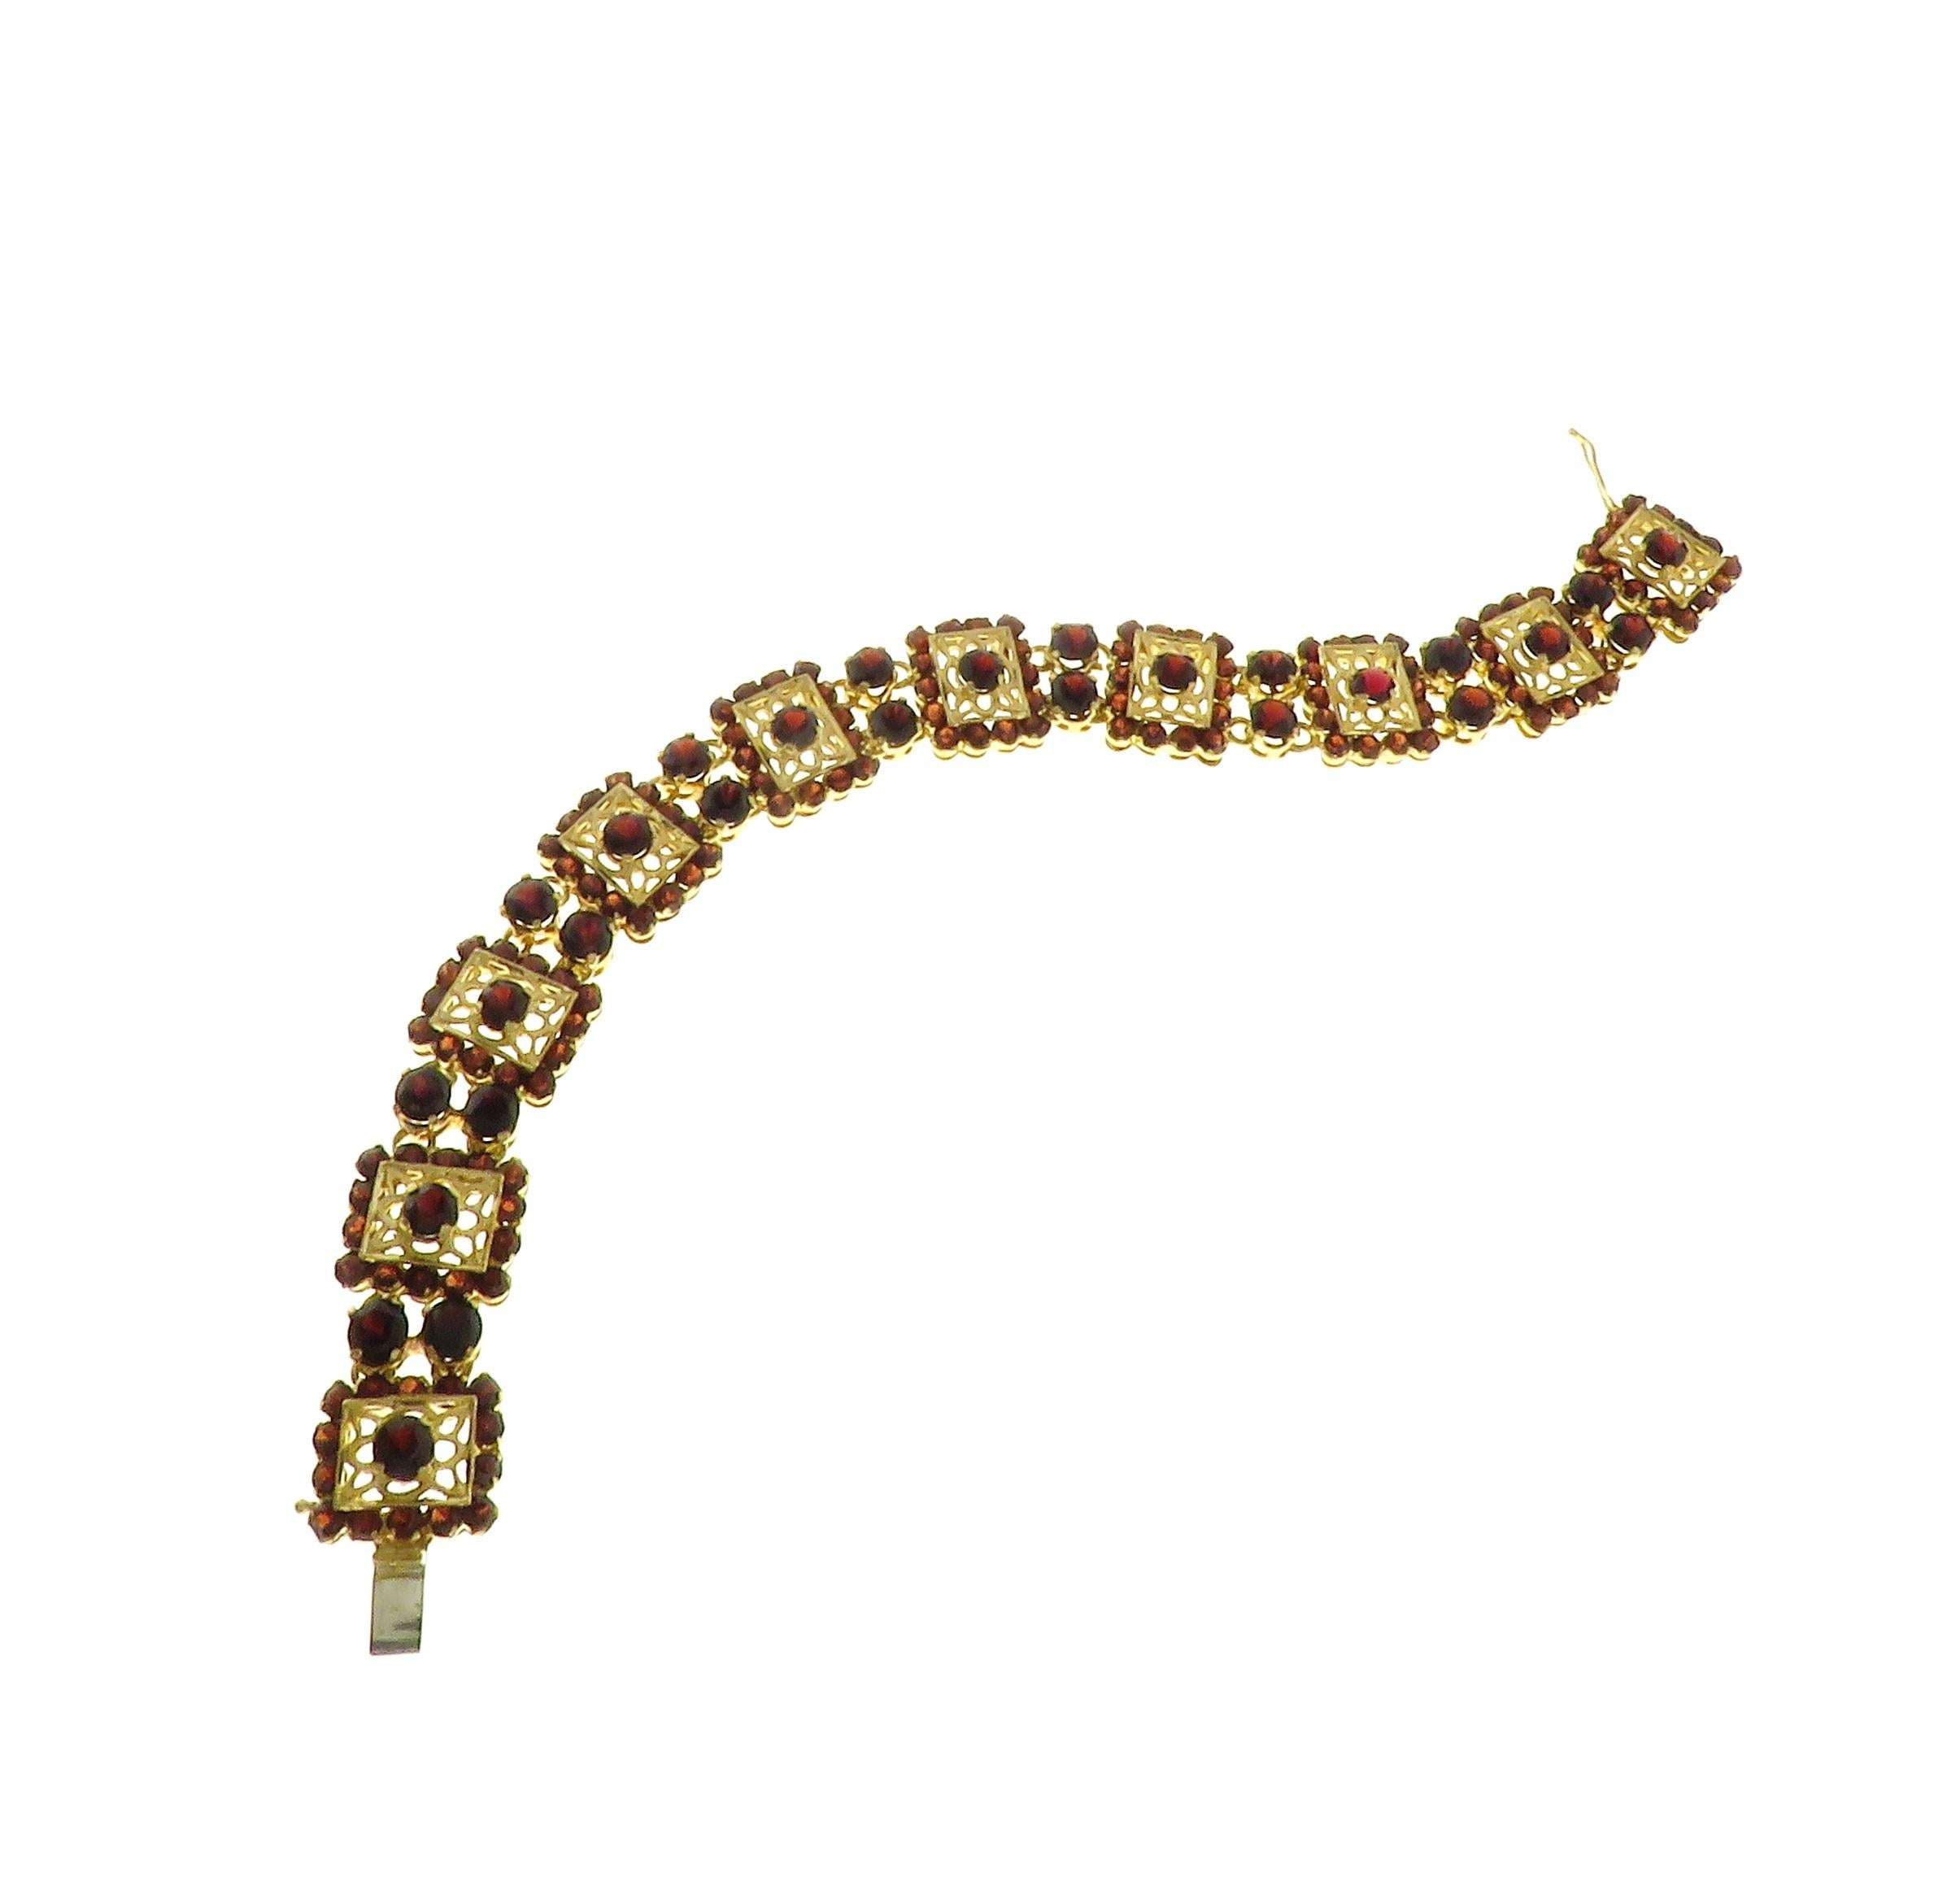 Superbe bracelet vintage datant des années 1960 avec des grenats naturels d'un rouge profond. Il est fabriqué en or rose clair 18 carats et entièrement gravé à la main. La longueur du bracelet est de 195 mm / 7.677 inches. Ce magnifique bracelet a